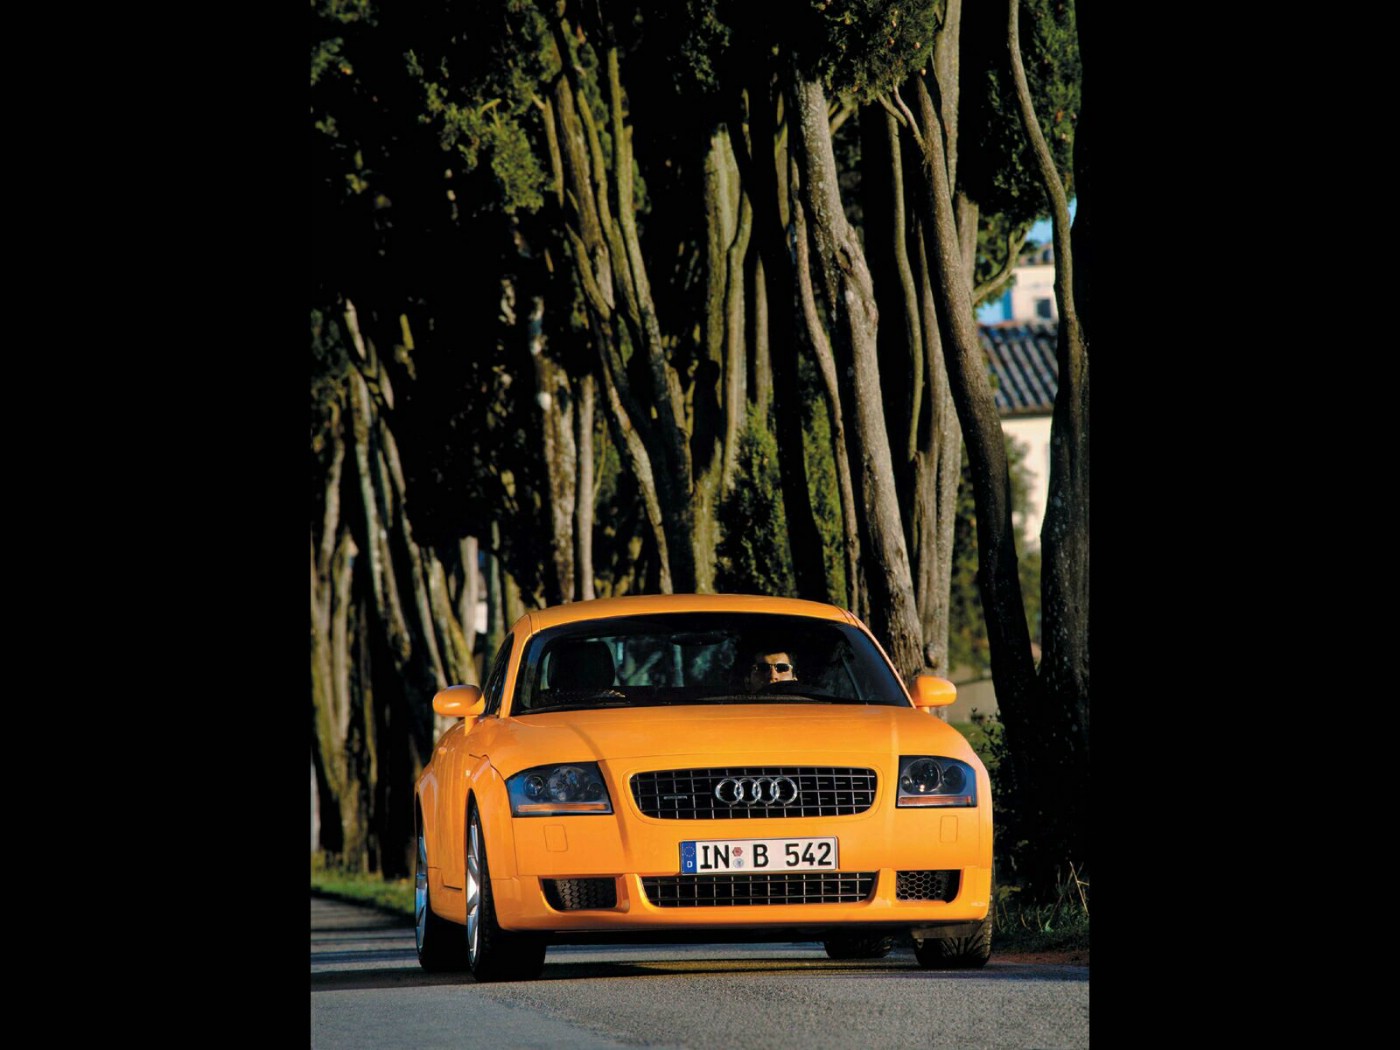 壁纸1400x1050Audi TT Coupe专辑壁纸 Audi-TT-Coupe壁纸壁纸 Audi-TT-Coupe壁纸图片 Audi-TT-Coupe壁纸素材 汽车壁纸 汽车图库 汽车图片素材桌面壁纸